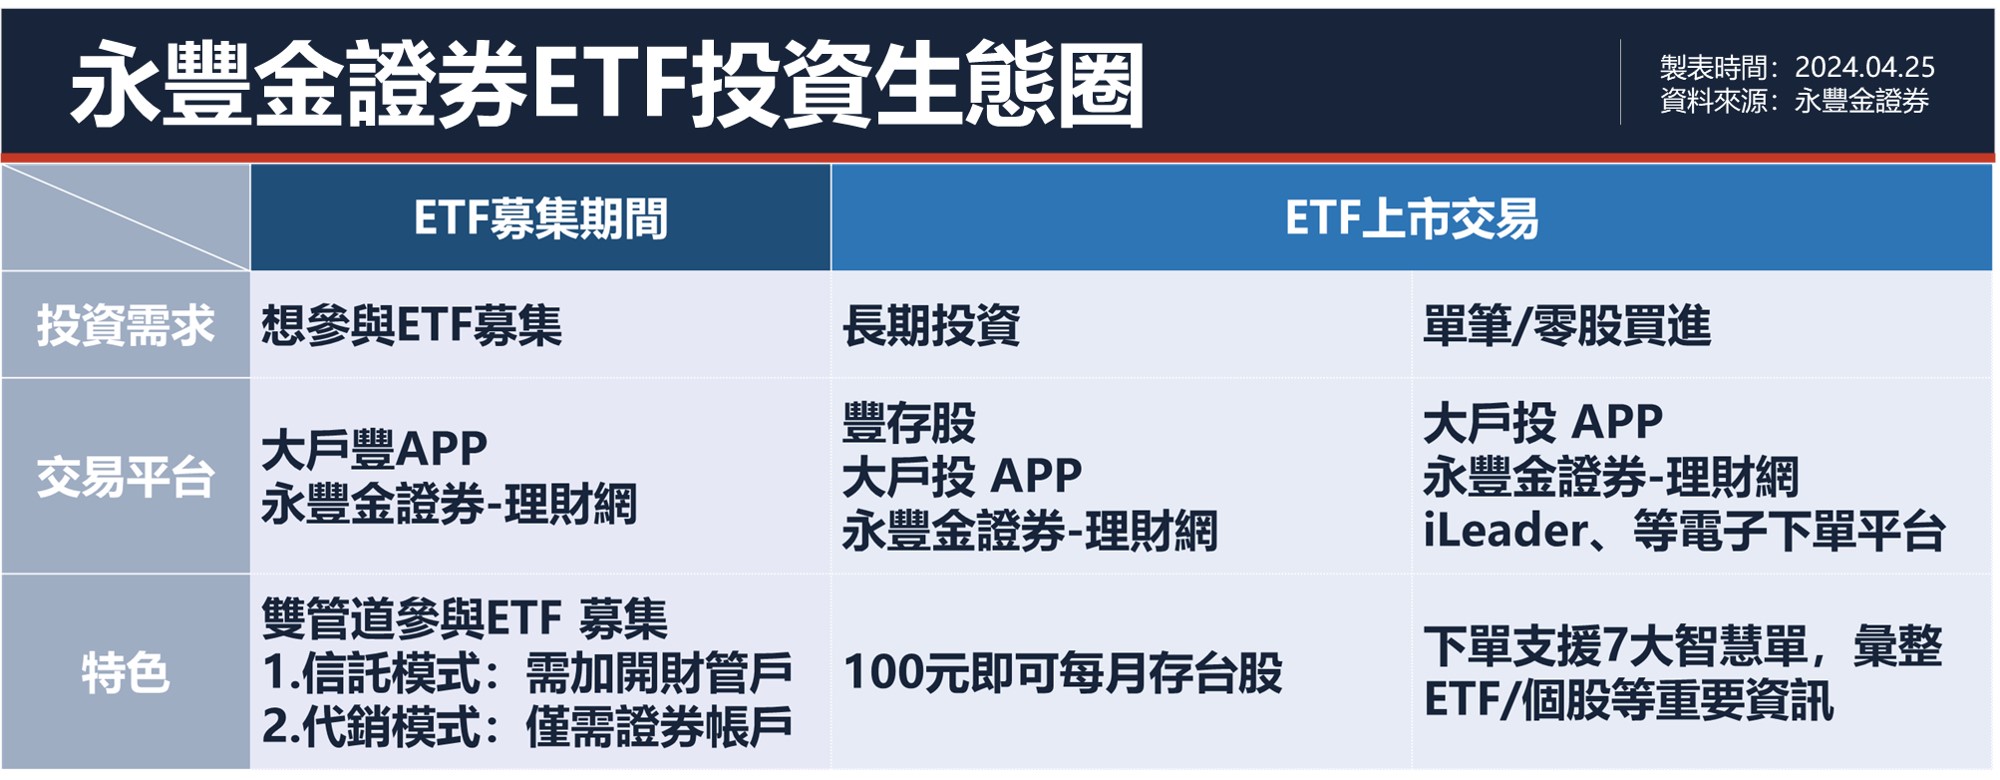 永丰金证券打造ETF投资生态圈。(永丰金证券/提供)